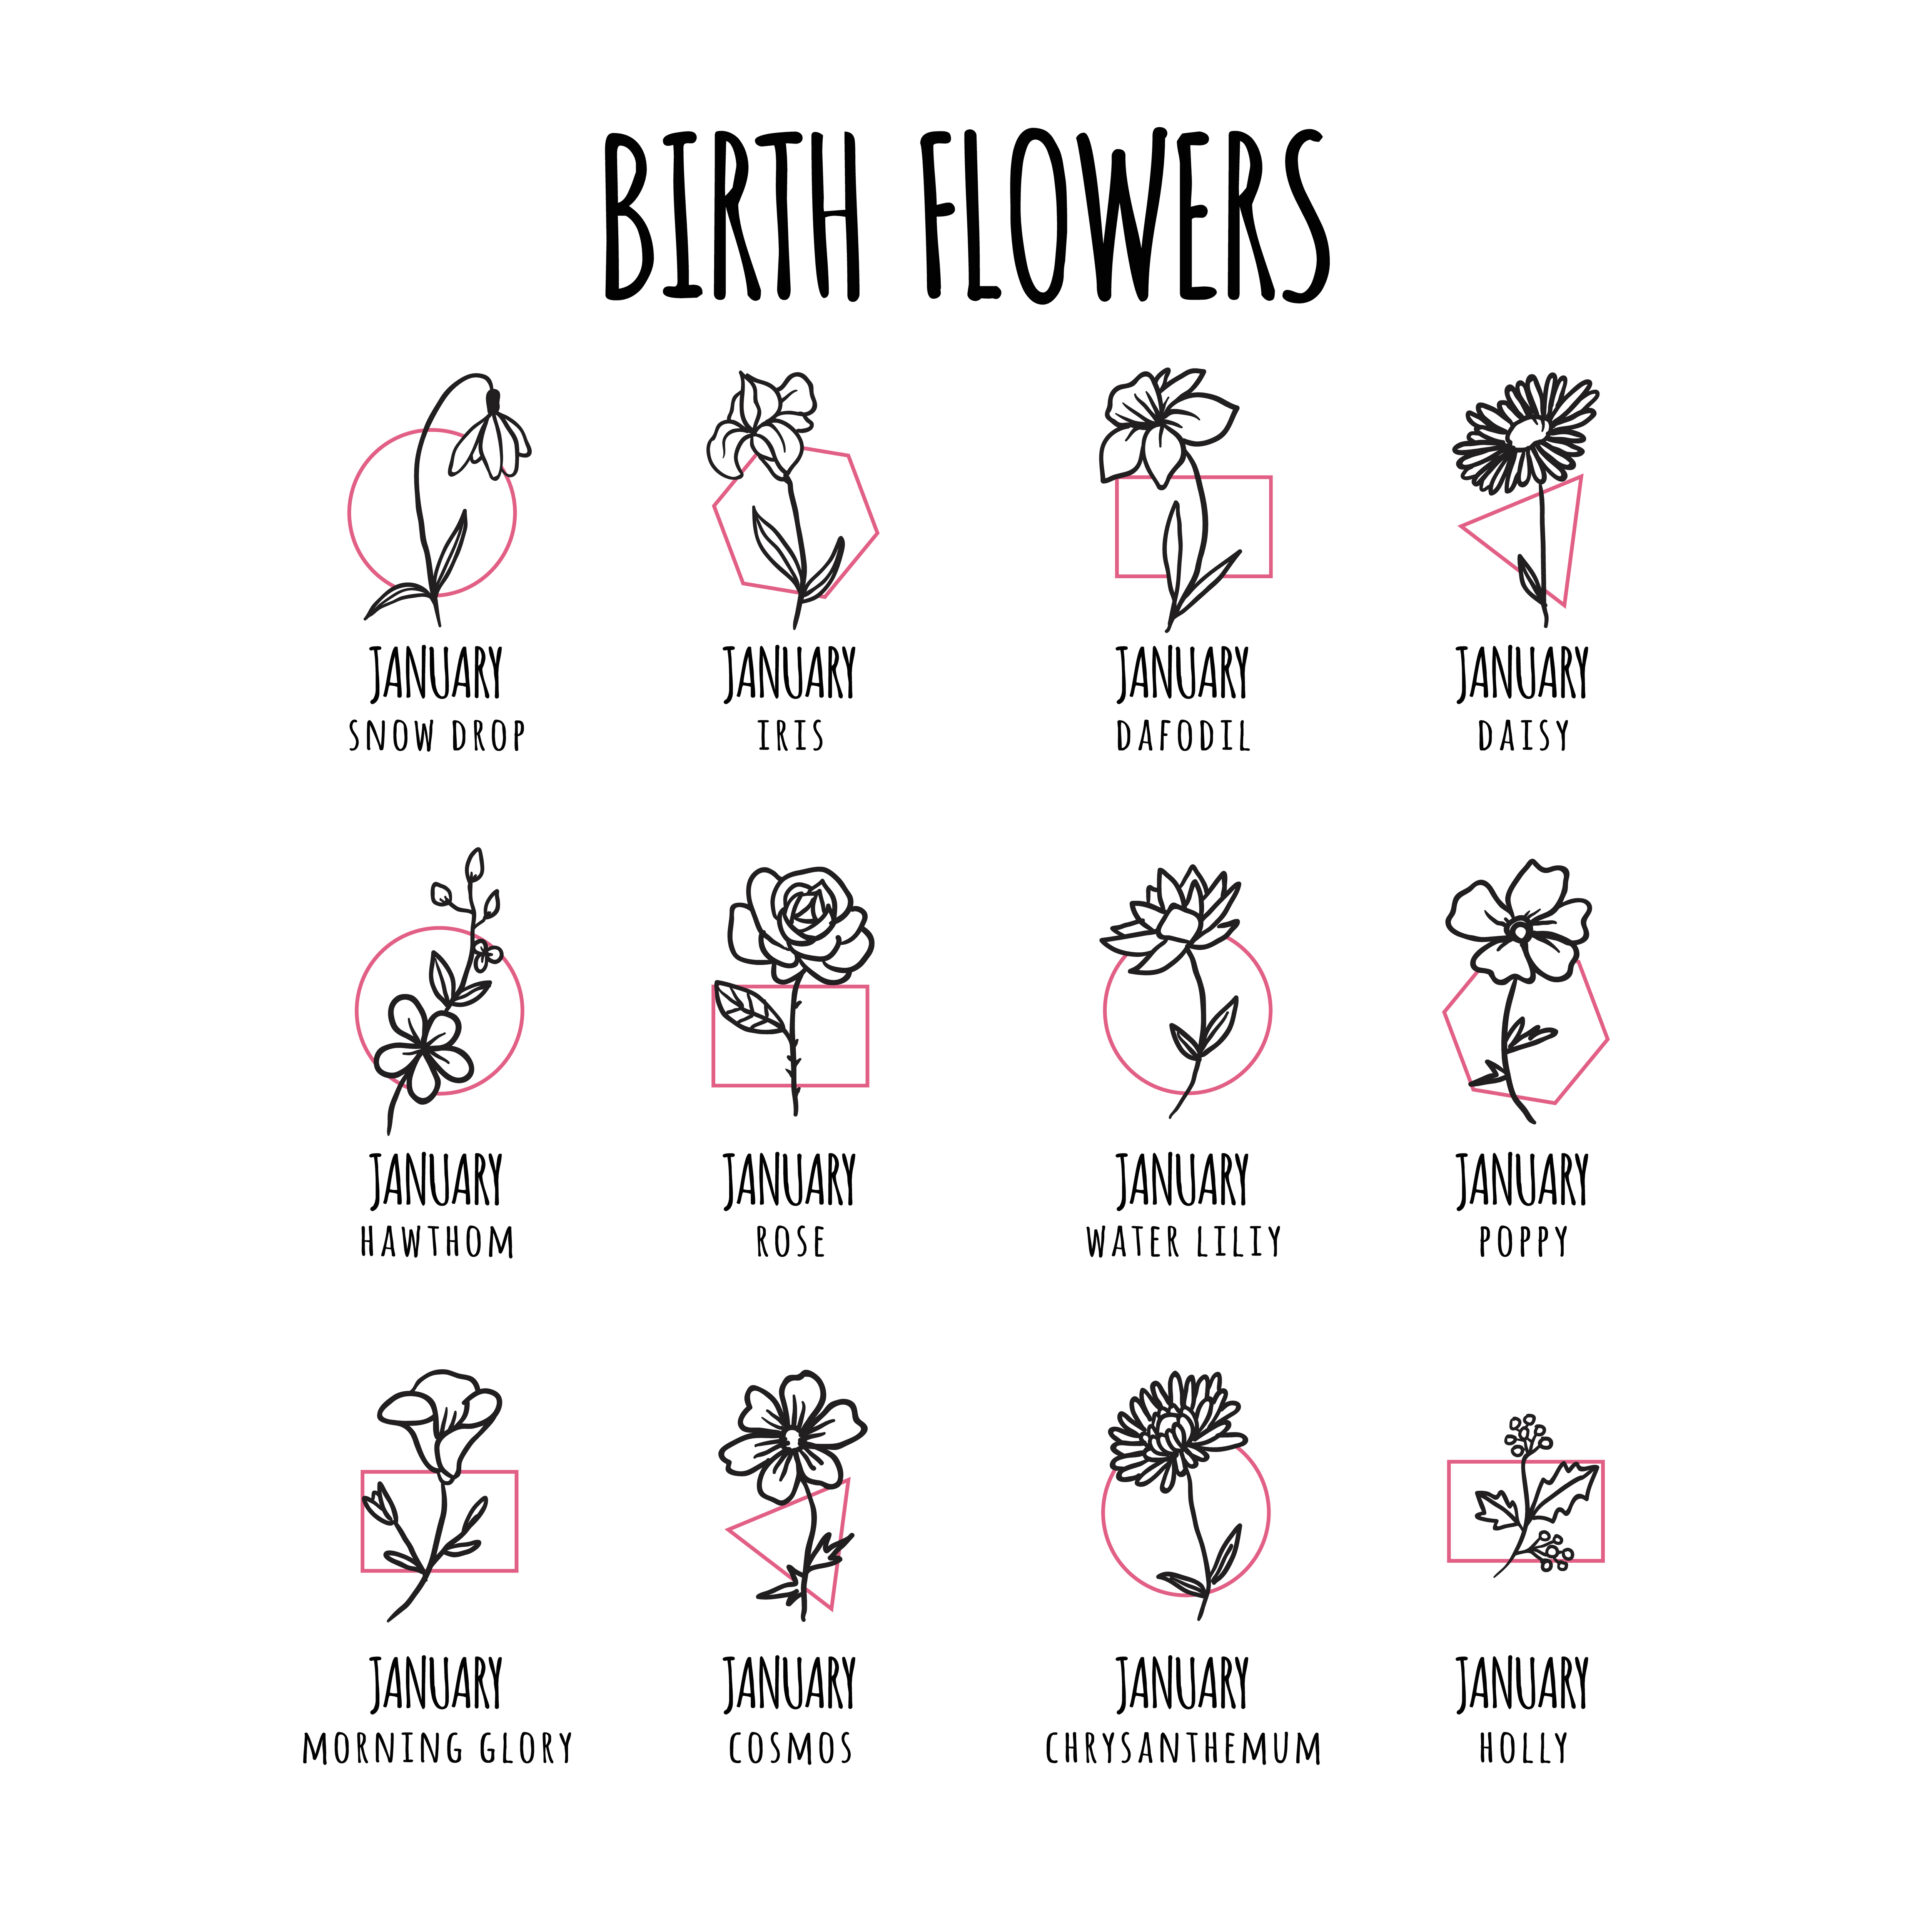 各月の誕生花の一覧表